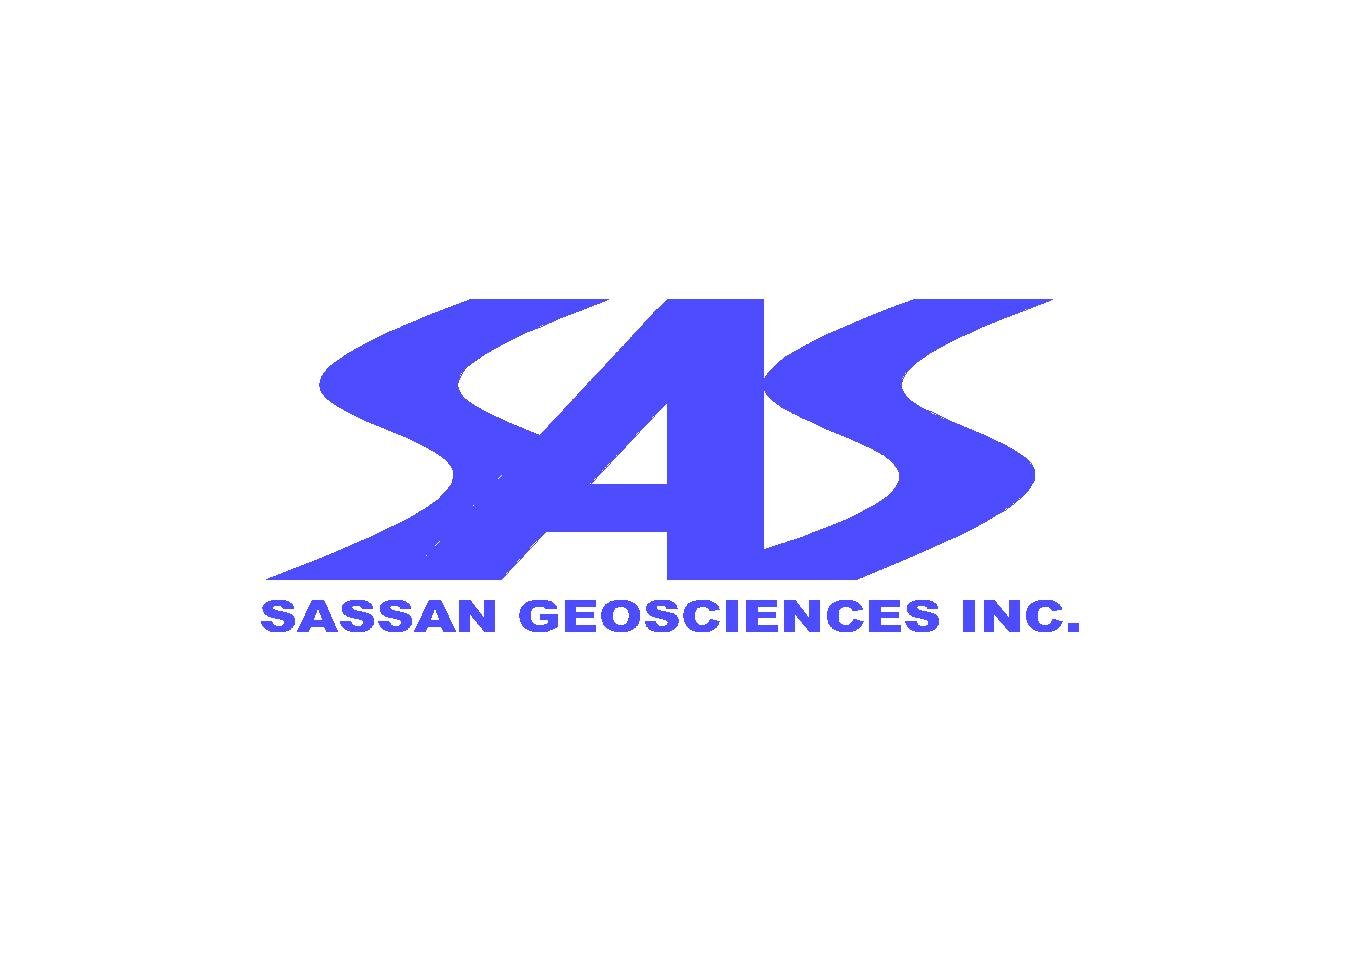 Sassan Geosciences